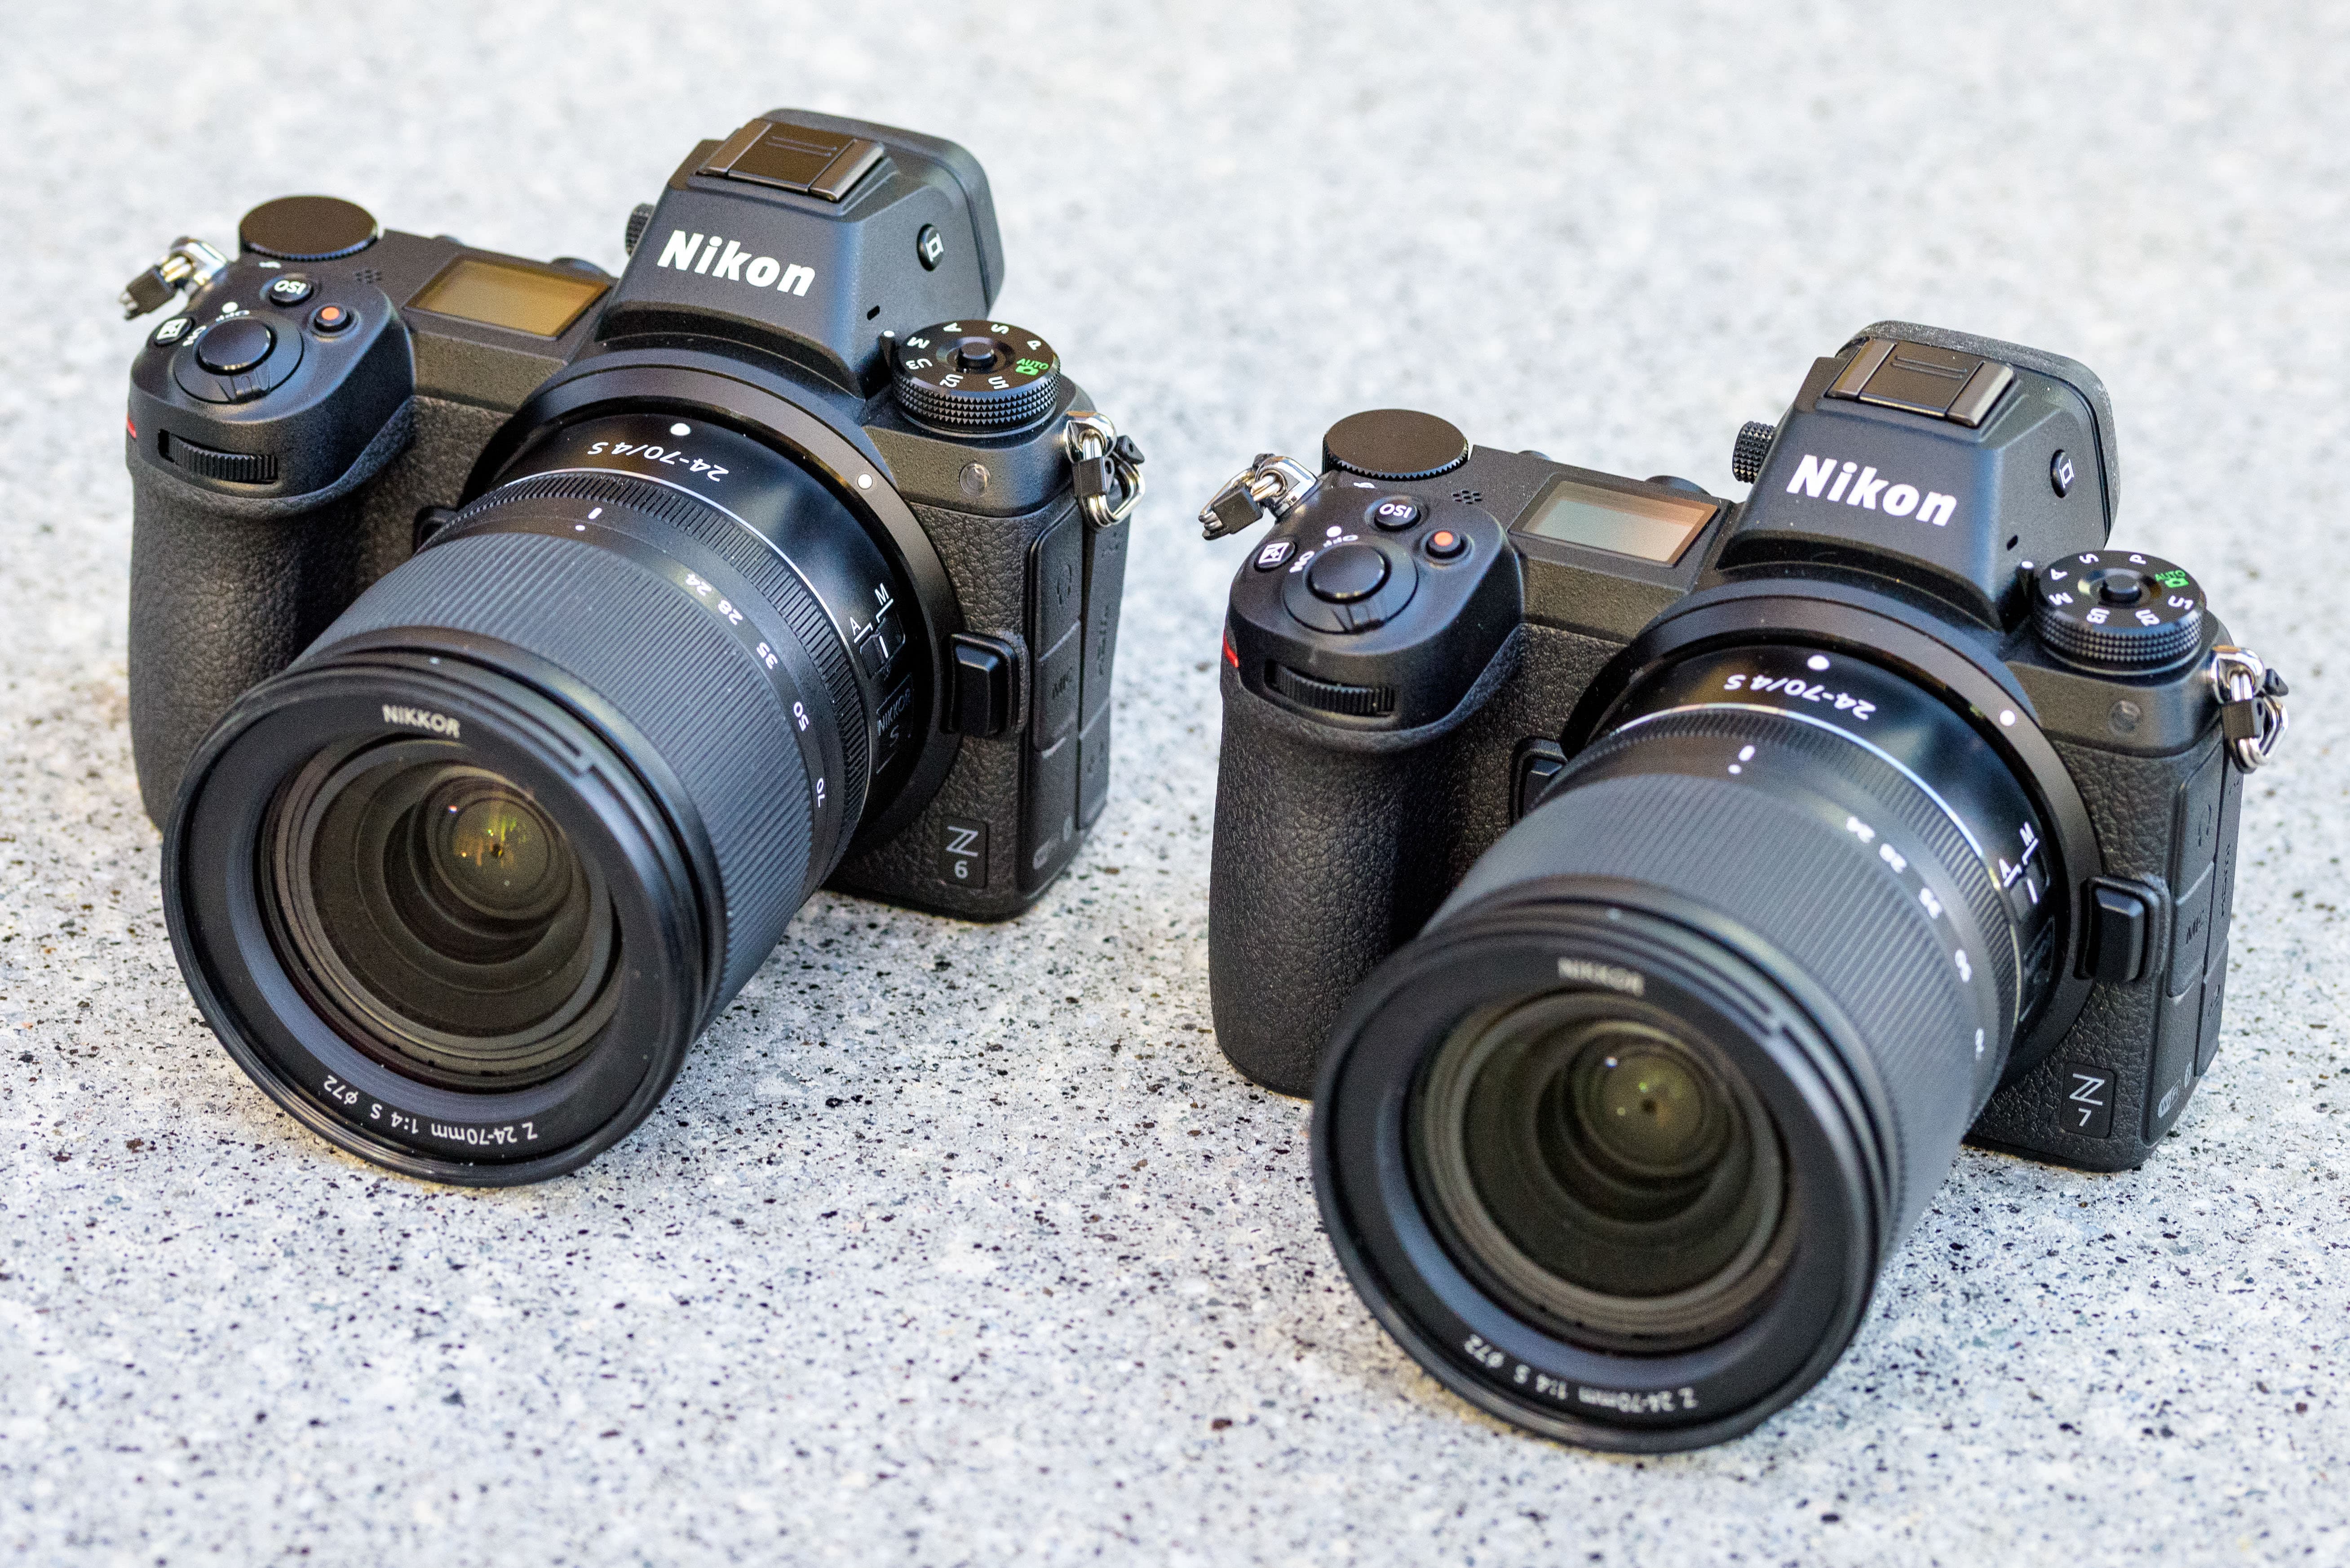 Nikon Z6 Sample Photos